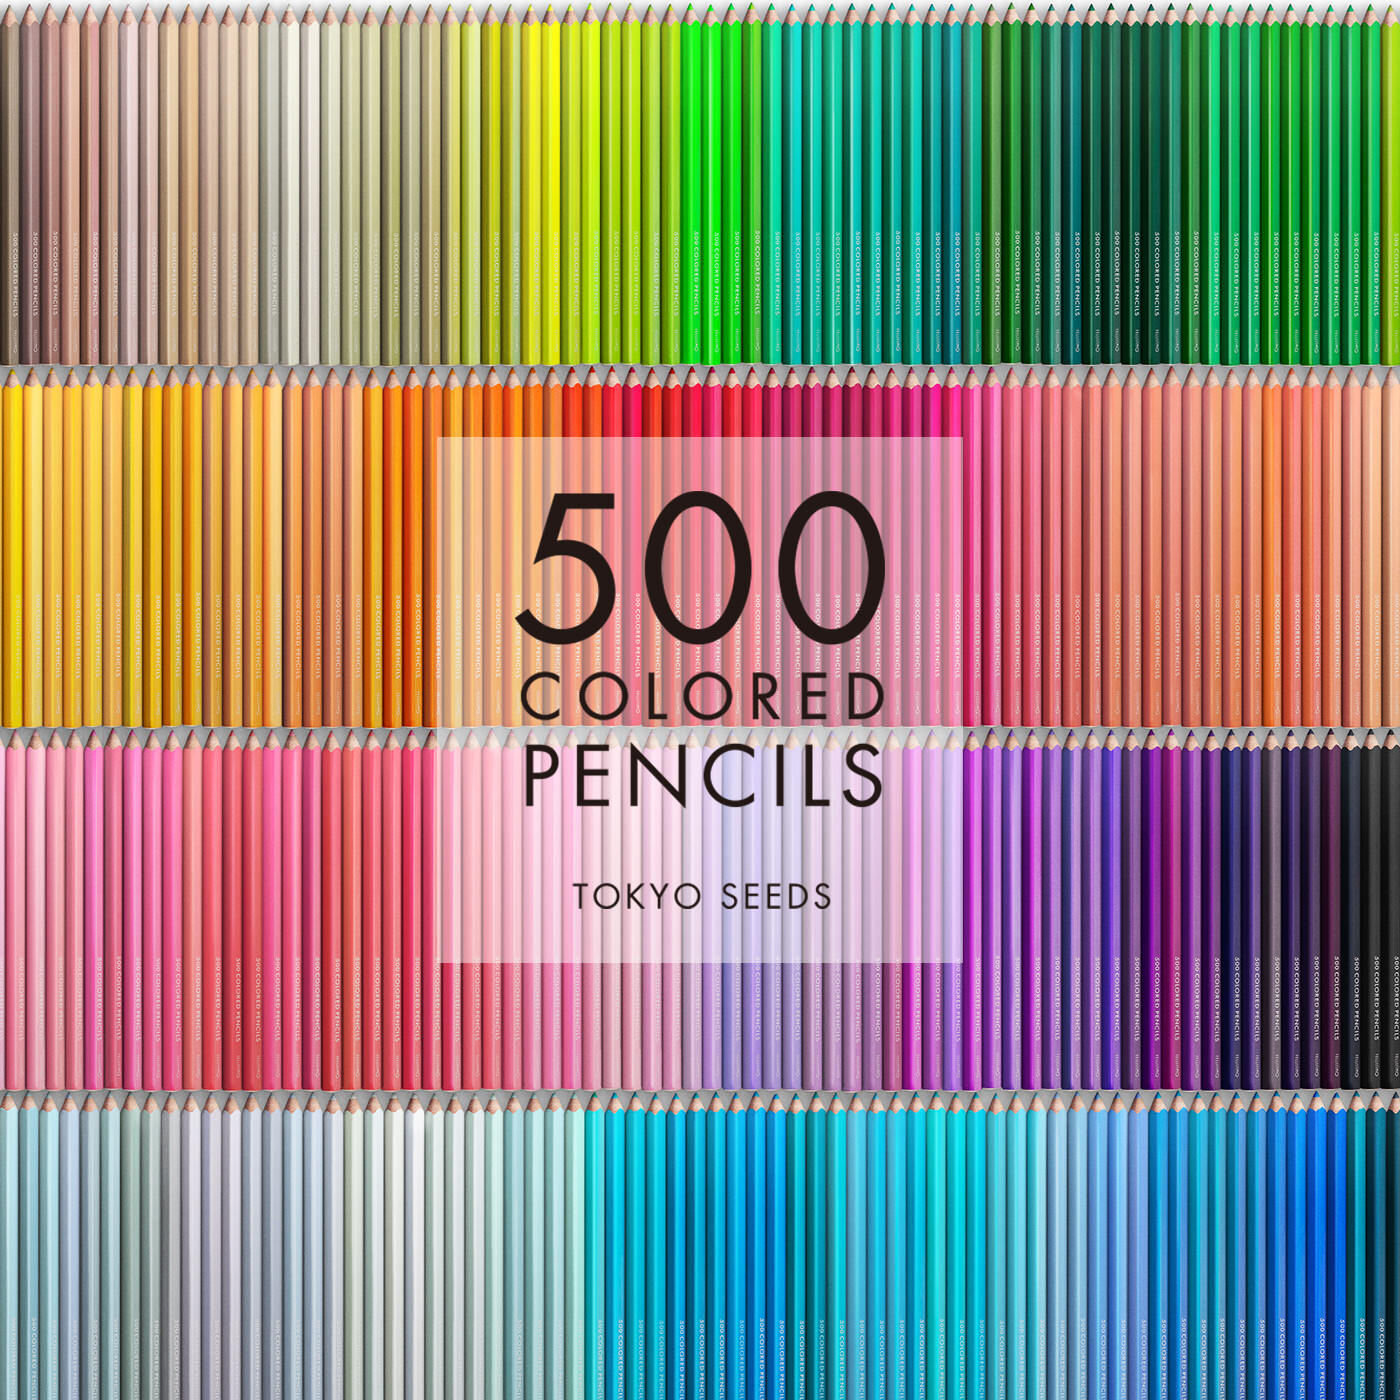 Real Stock|【192/500 PEACEFUL OLIVE】500色の色えんぴつ TOKYO SEEDS|1992年、世界初の「500色」という膨大な色数の色えんぴつが誕生して以来、その販売数は発売当初から合わせると、世界55ヵ国10万セット以上。今回、メイド・イン・ジャパンにこだわり、すべてが新しく生まれ変わって登場しました。